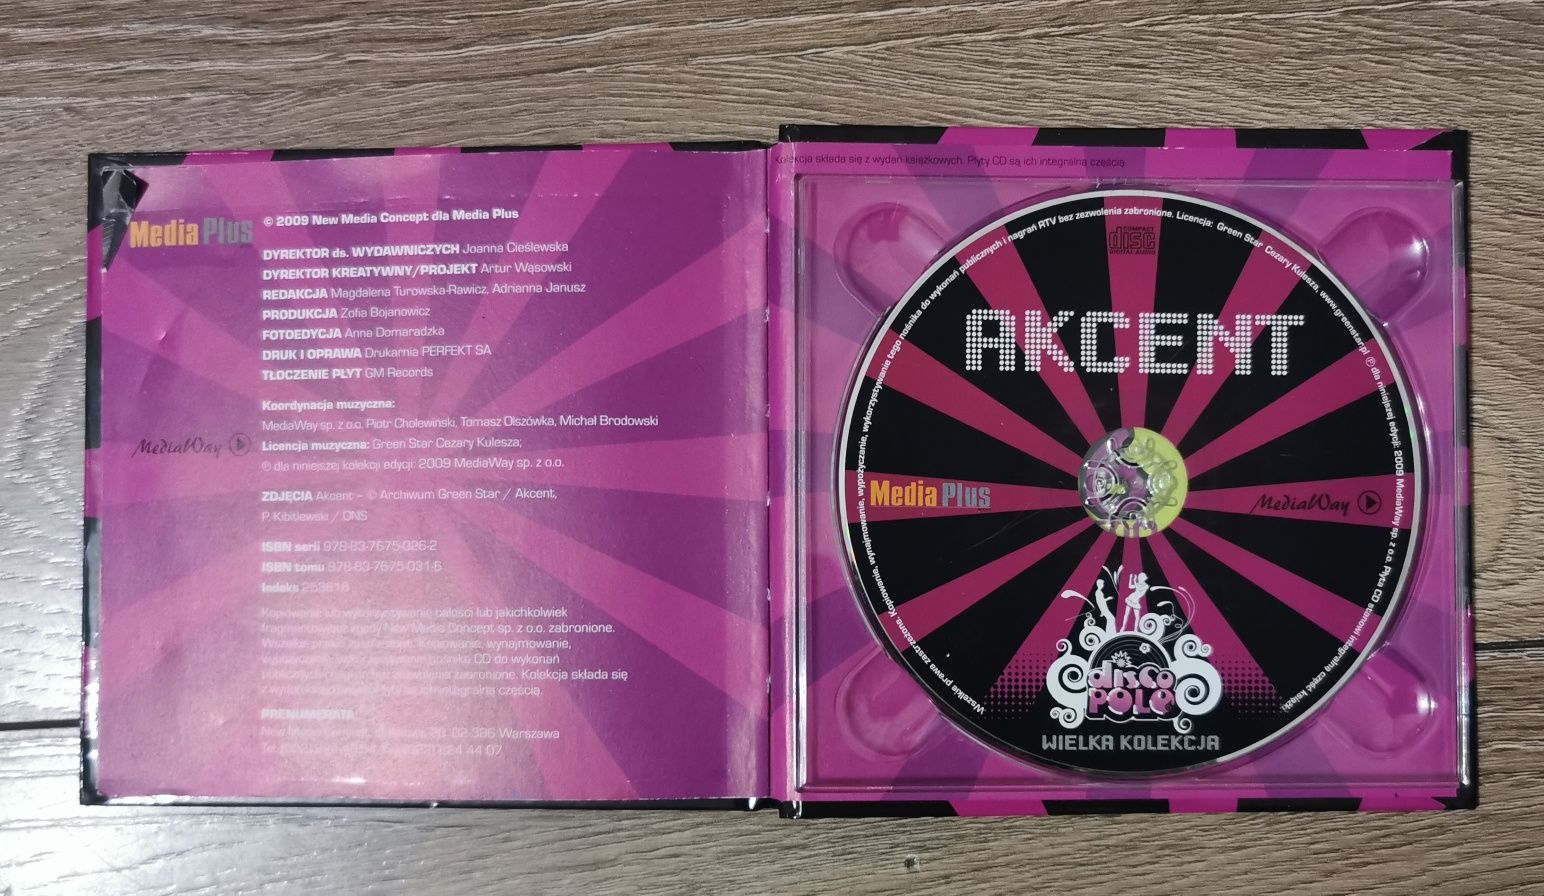 CD Akcent wielka kolekcja Disco polo